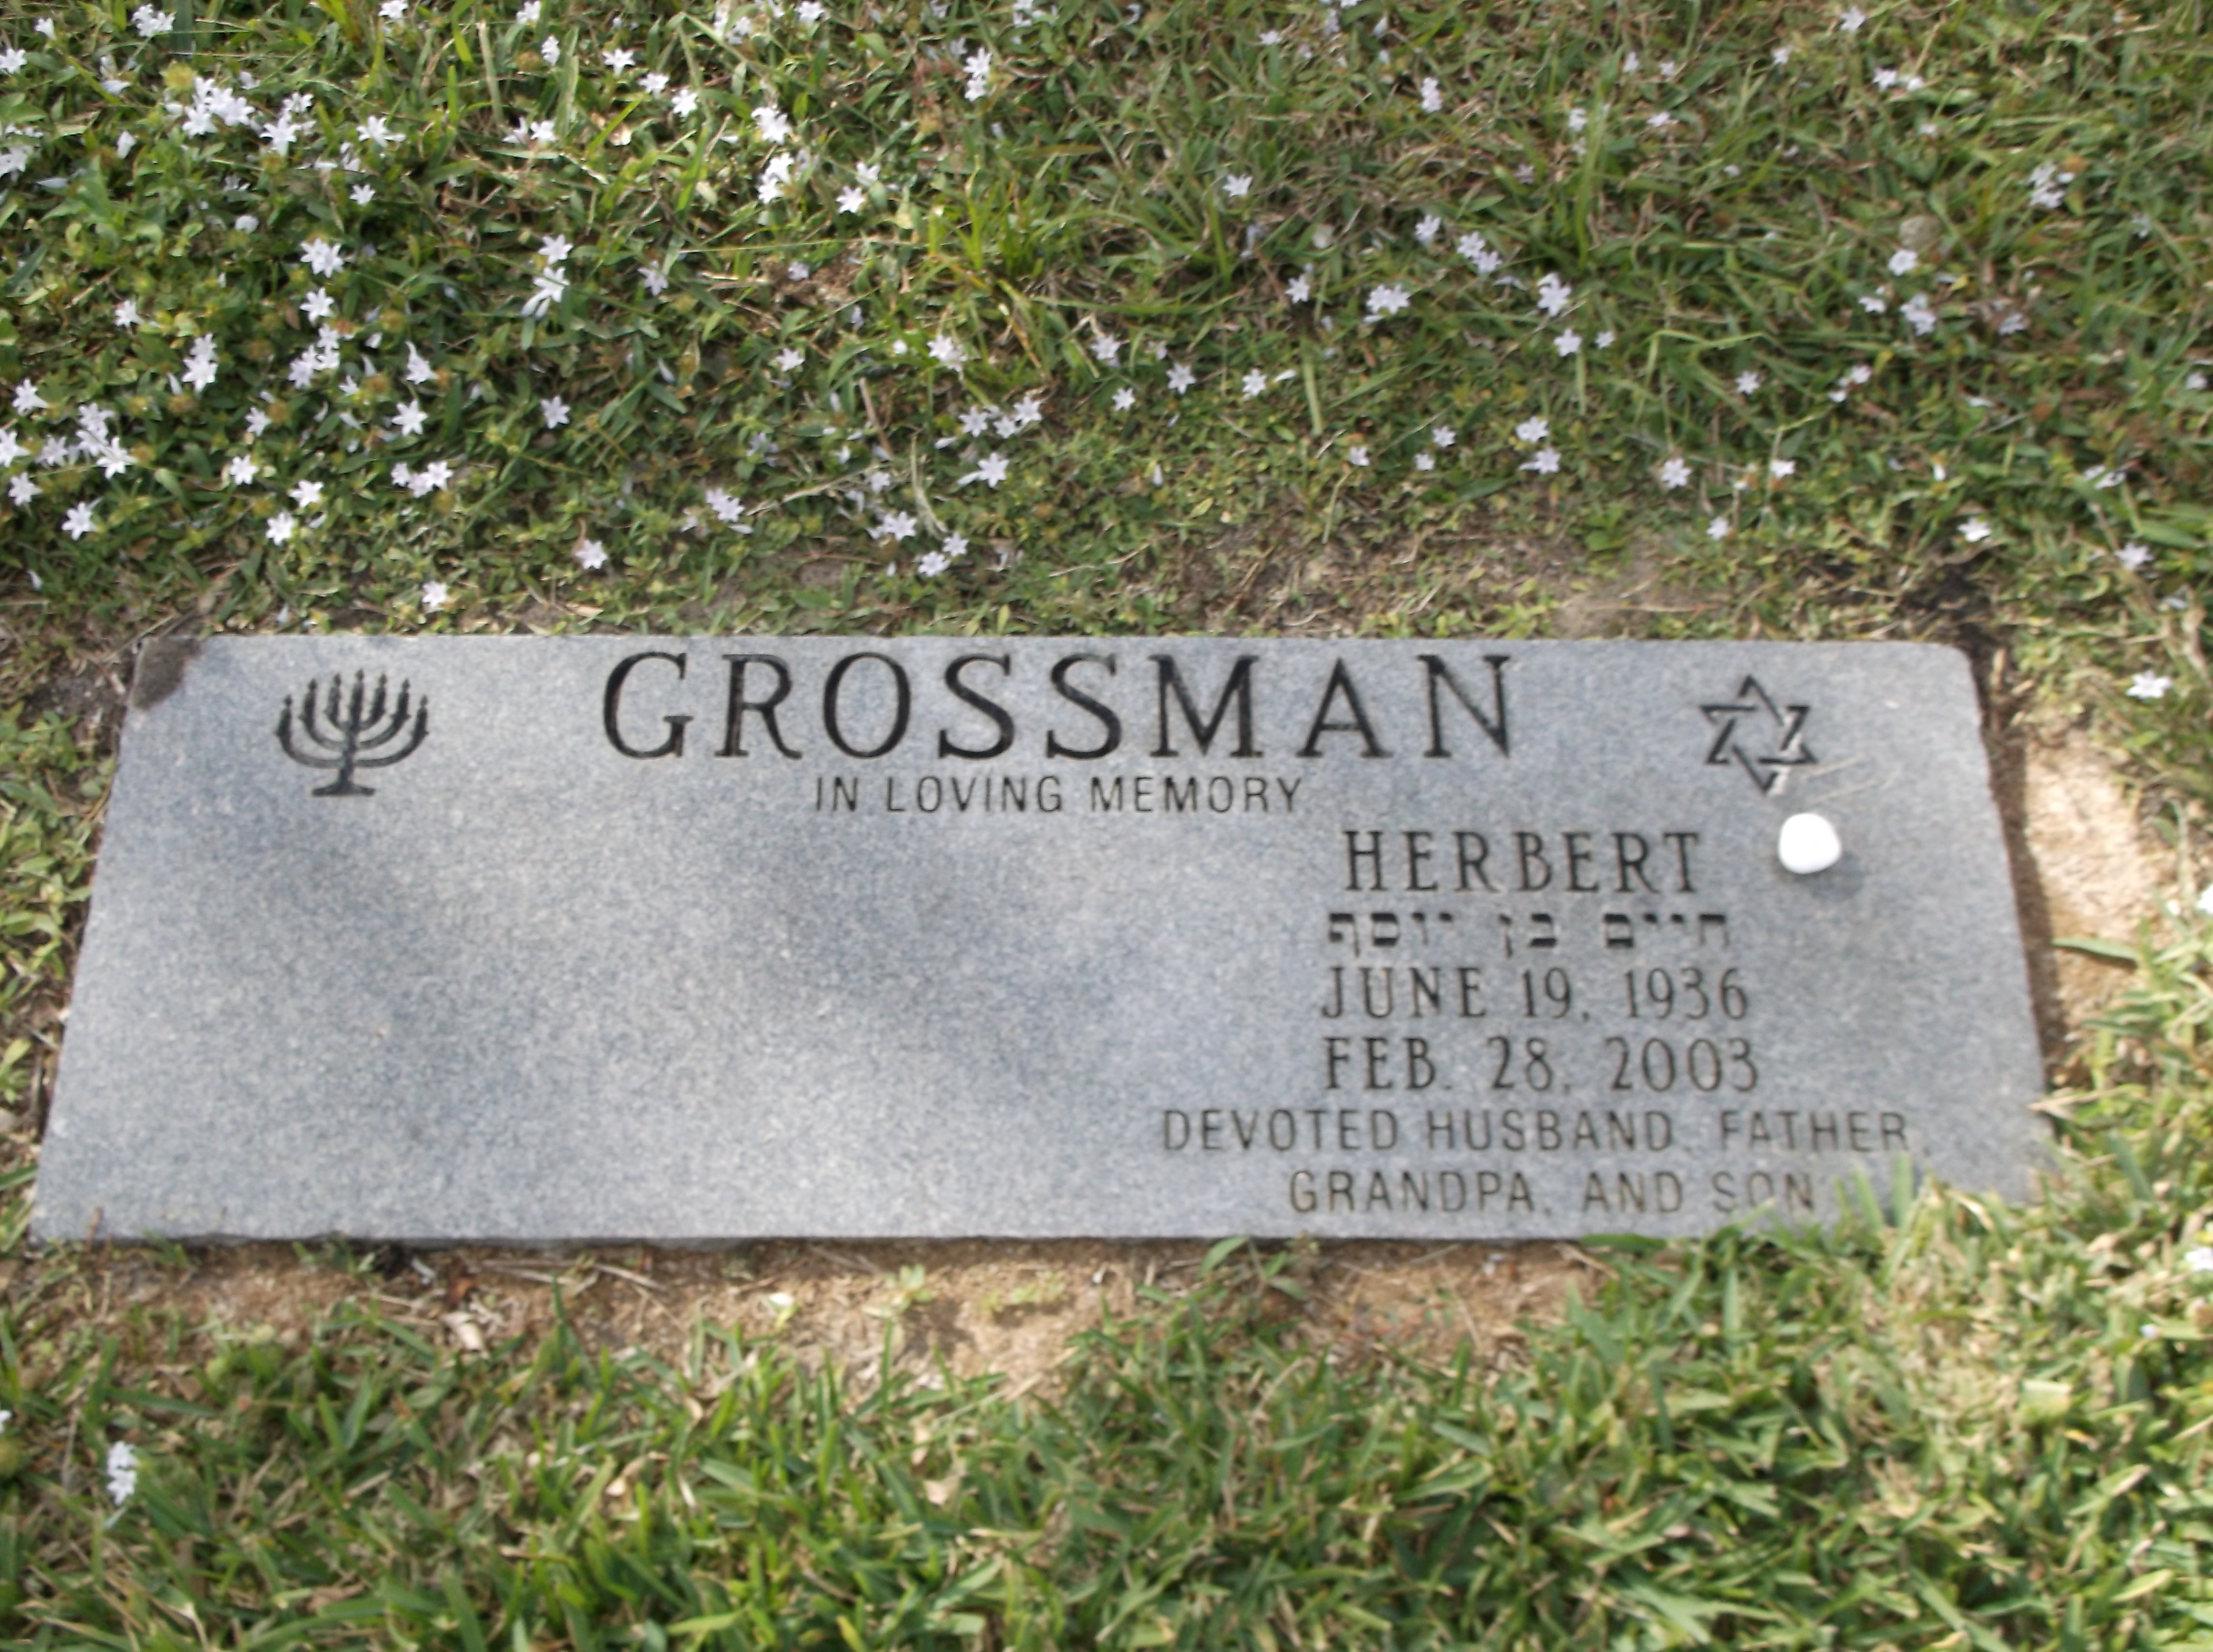 Herbert Grossman